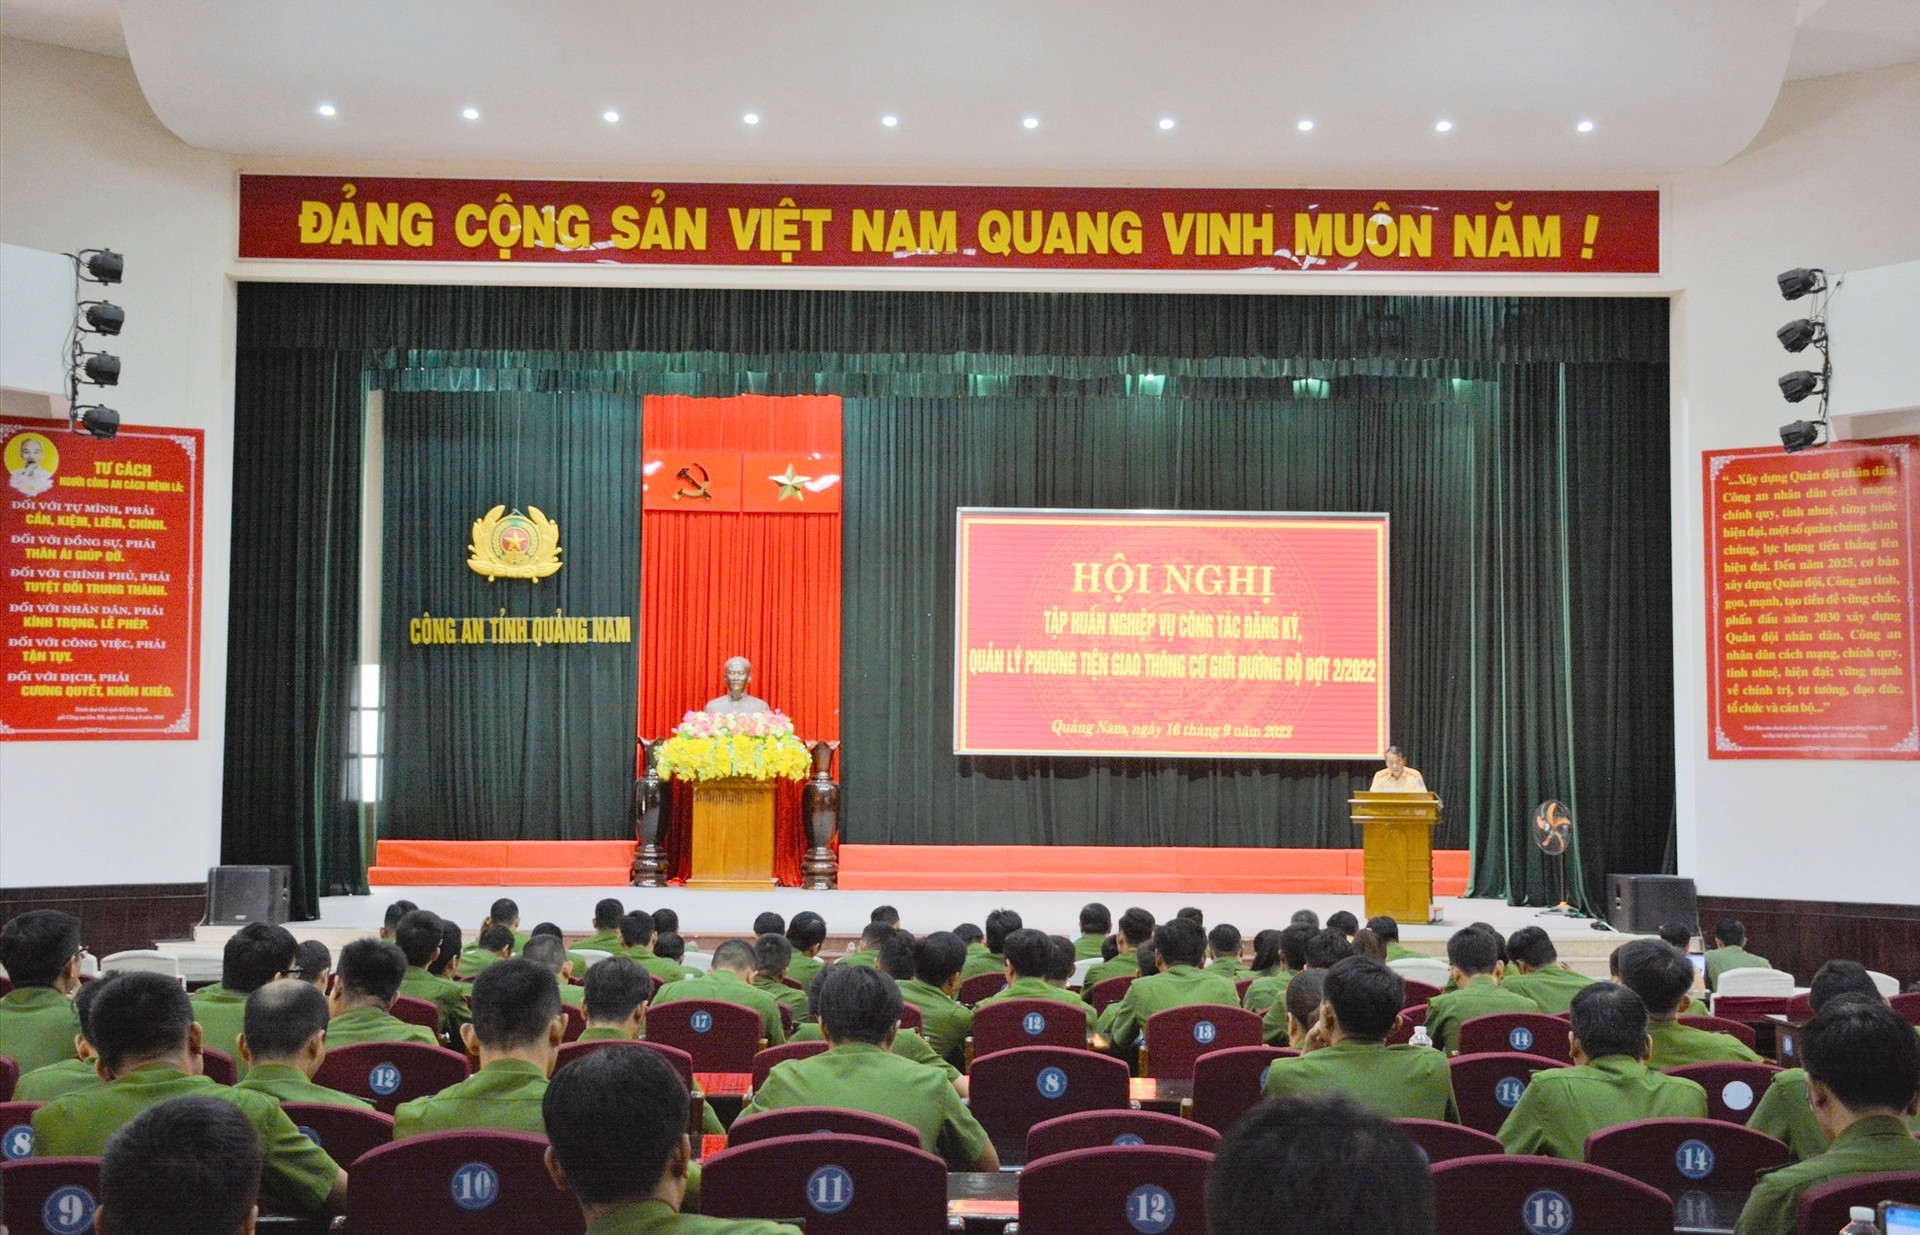 Hơn 100 cán bộ chiến sĩ tham gia hội nghị tập huấn.